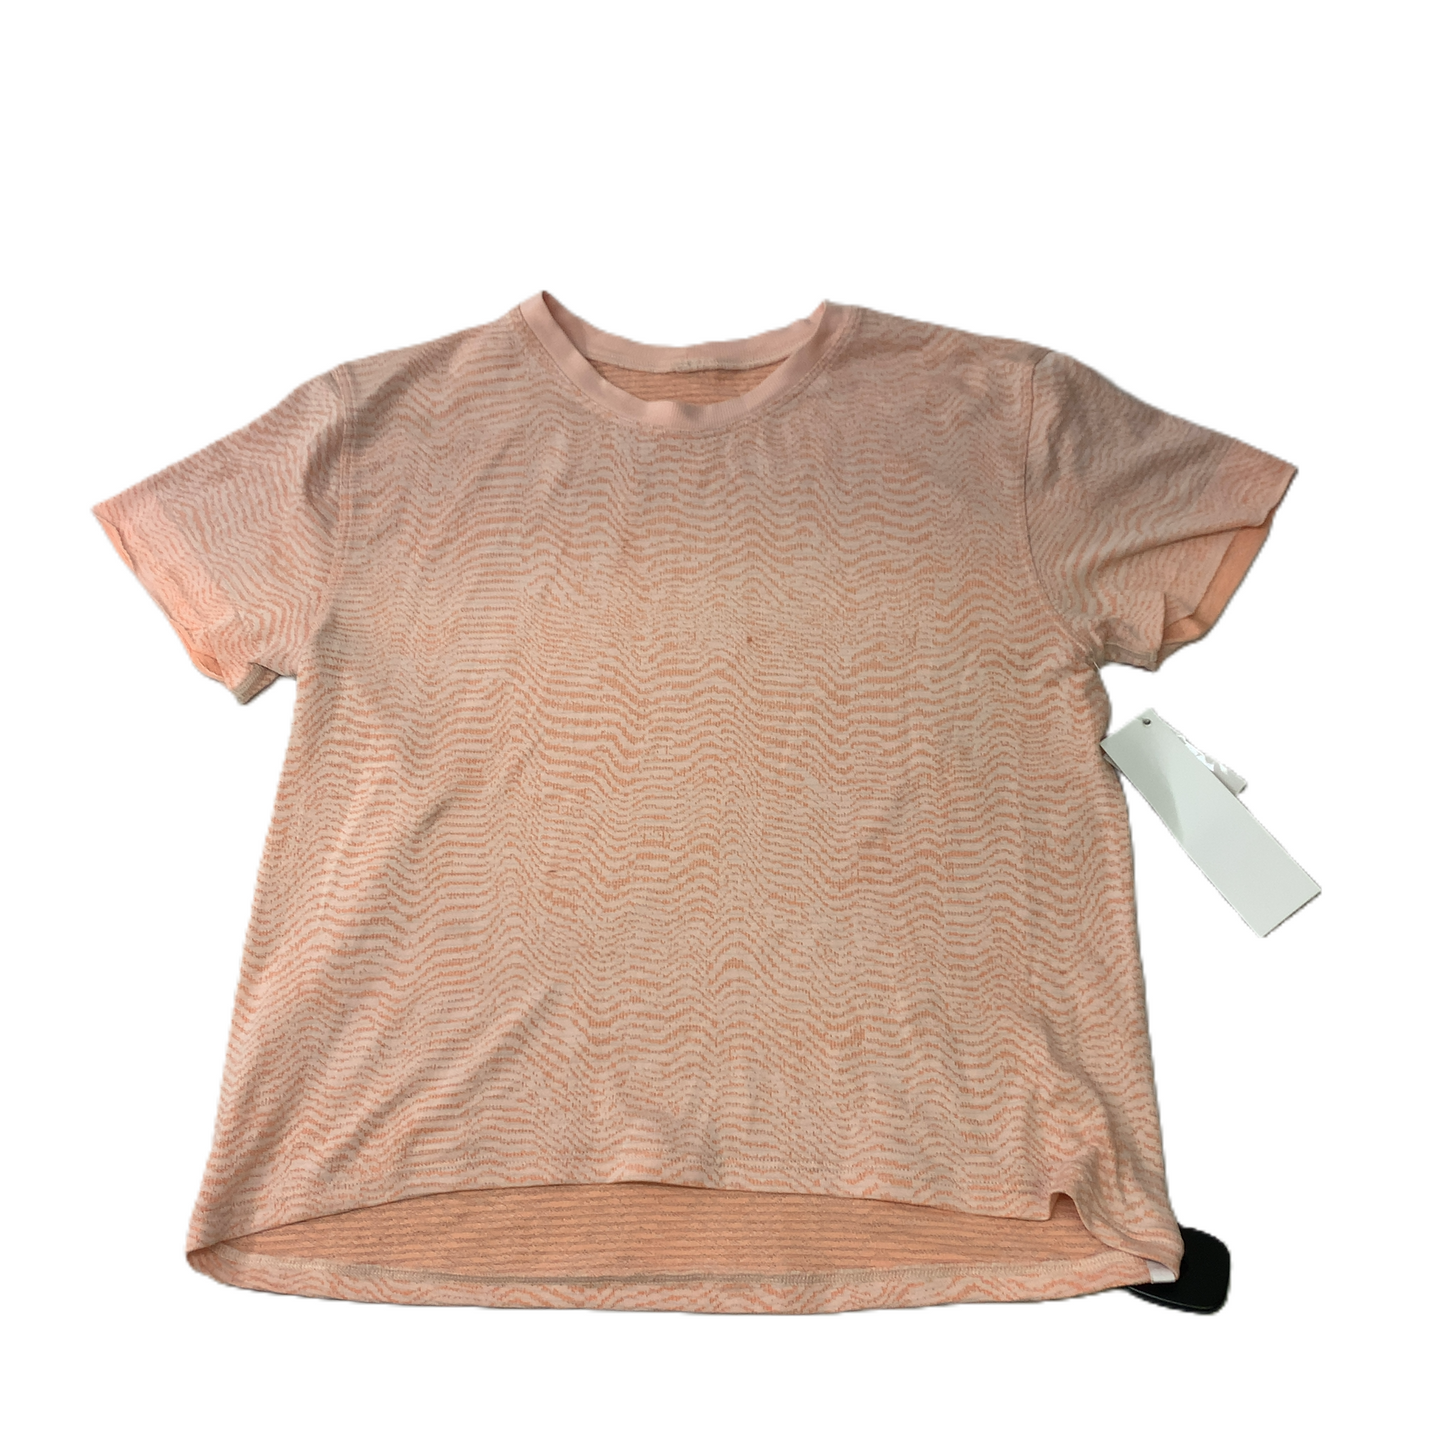 Orange  Athletic Top Short Sleeve By Lululemon  Size: S